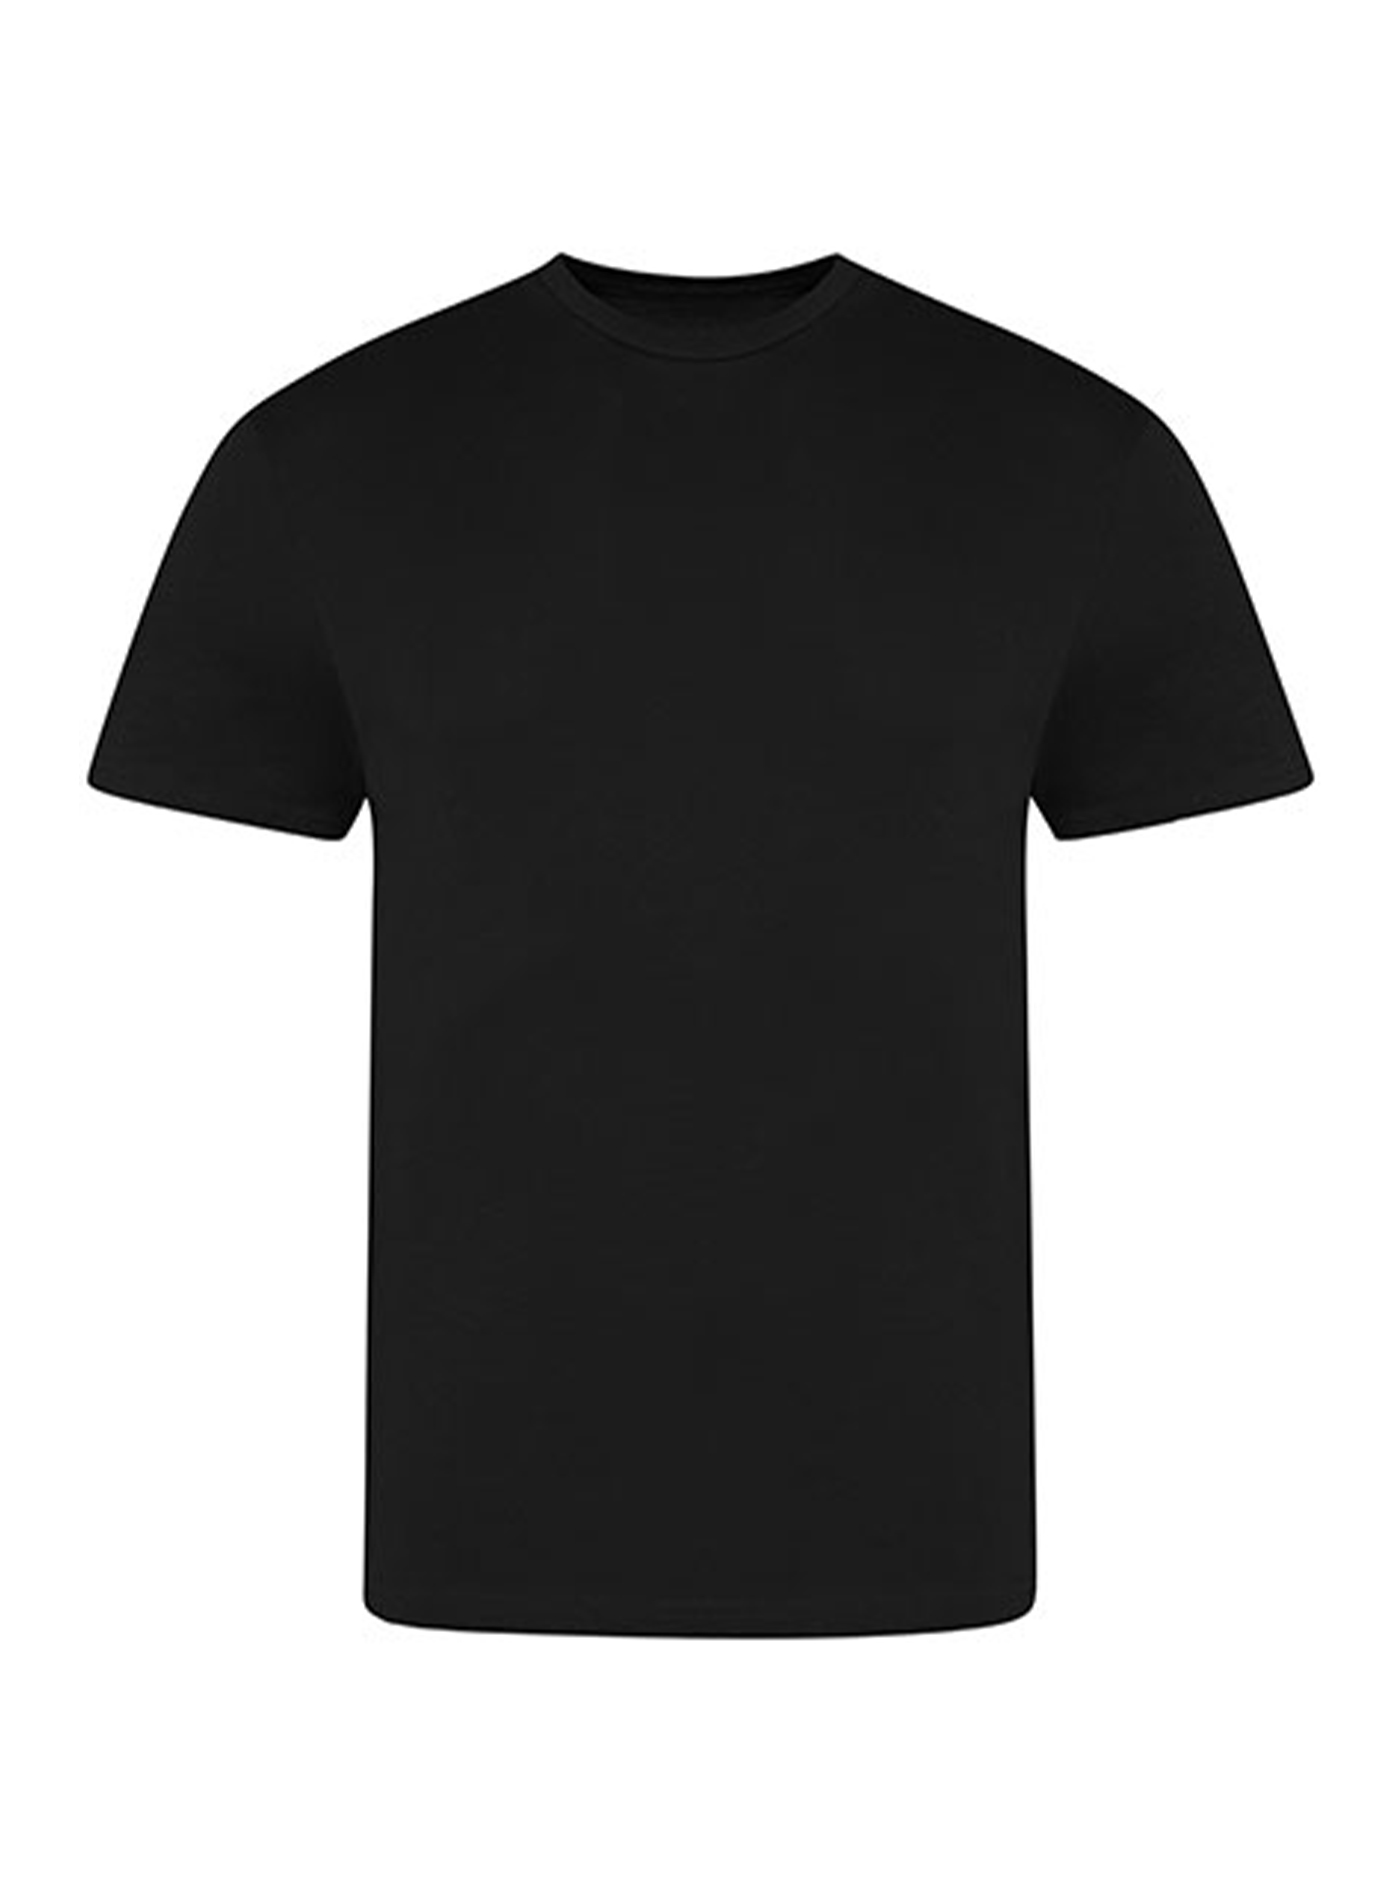 Pánské tričko Just Ts - černá XXL